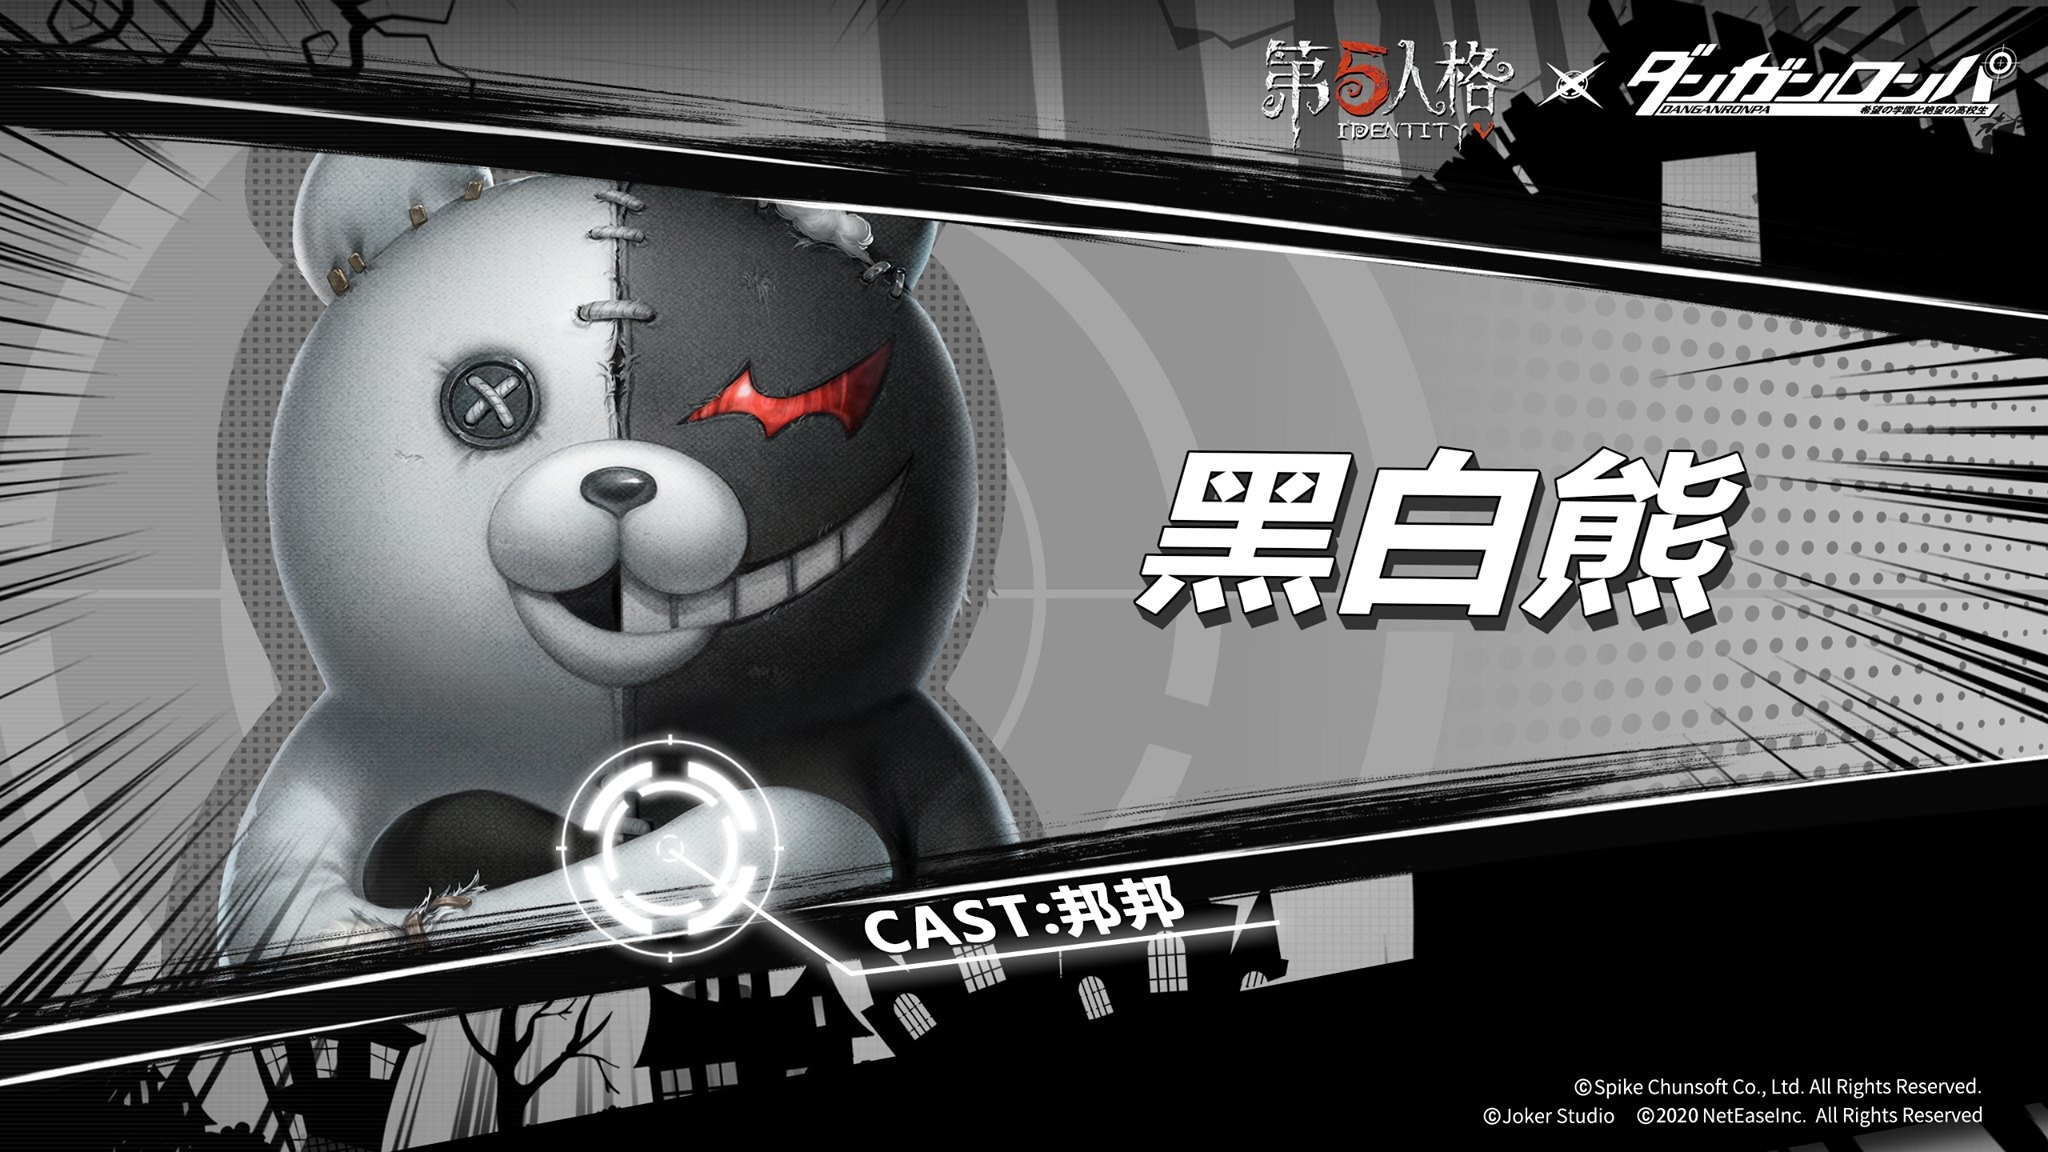 此外,官方也公布合作角色「黑白熊(cast:邦邦)」,供玩家先睹为快.